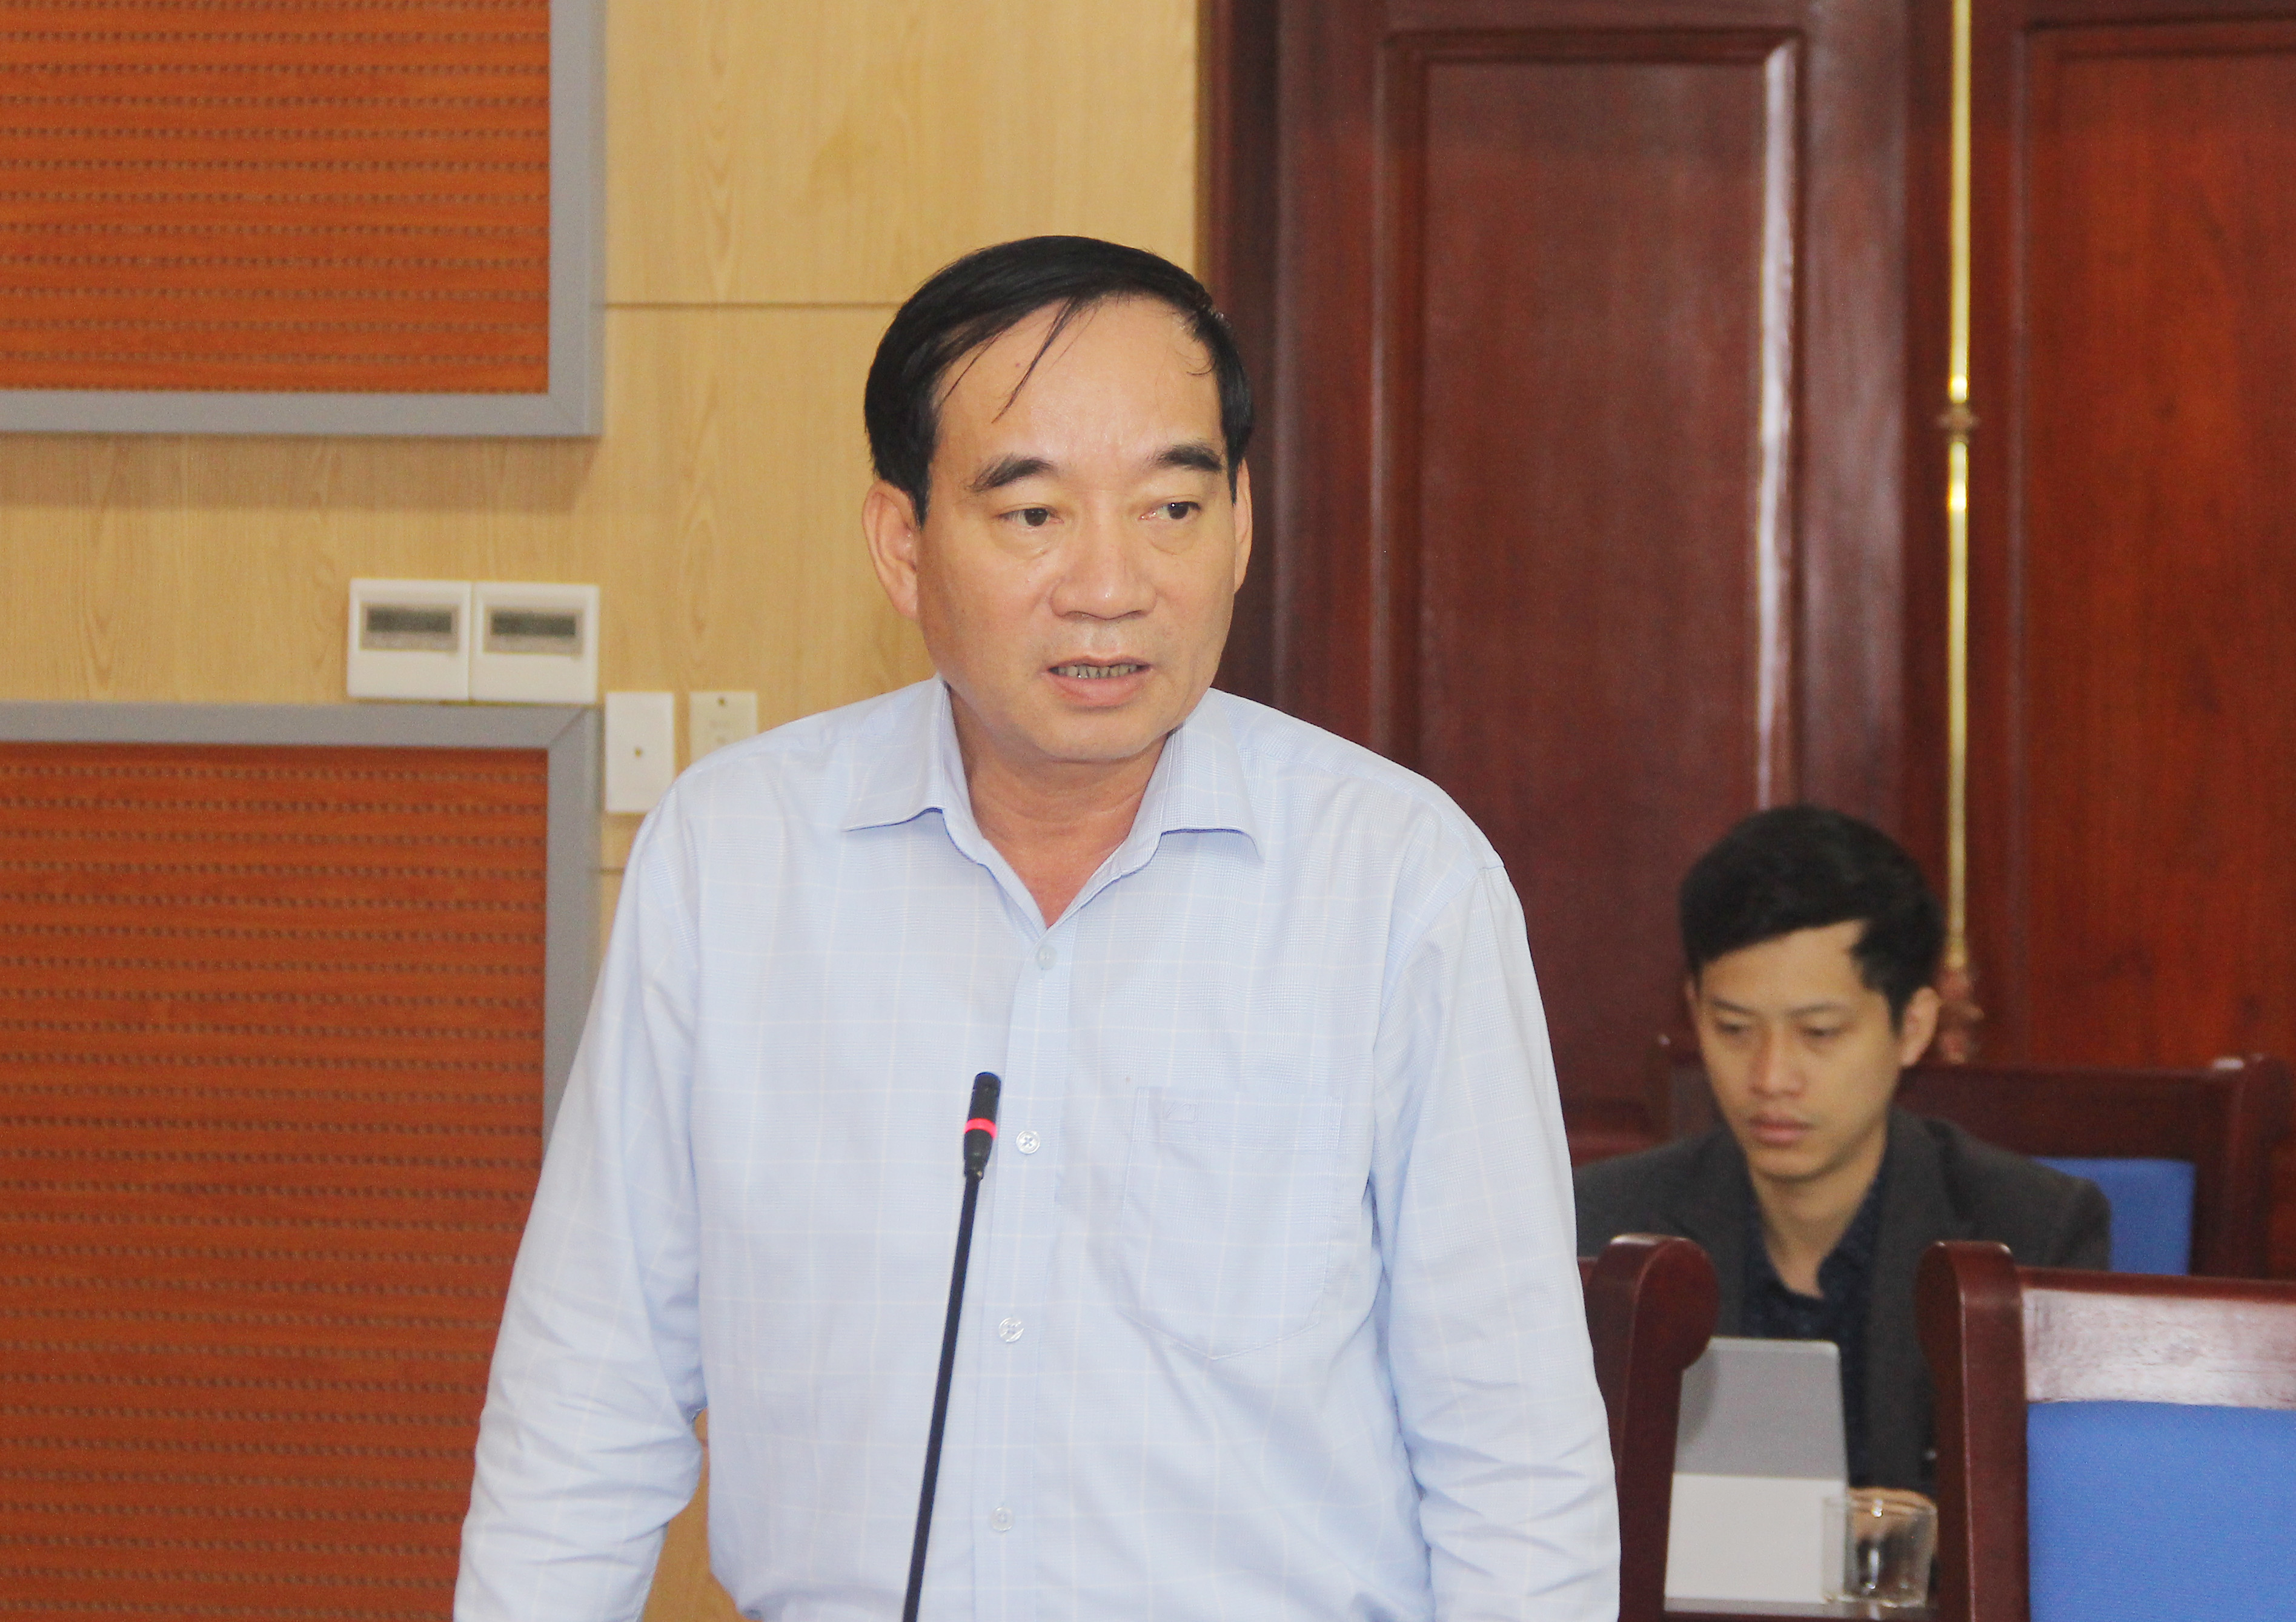 Phó Chủ tịch HĐND tỉnh Hoàng Viết Đường tham gia ý kiến về việc giao quyền quyết định chủ trương đầu tư một số dự án đầu tư cho UBND tỉnh theo Luật đầu tư công năm 2019. Ảnh: Mai Hoa